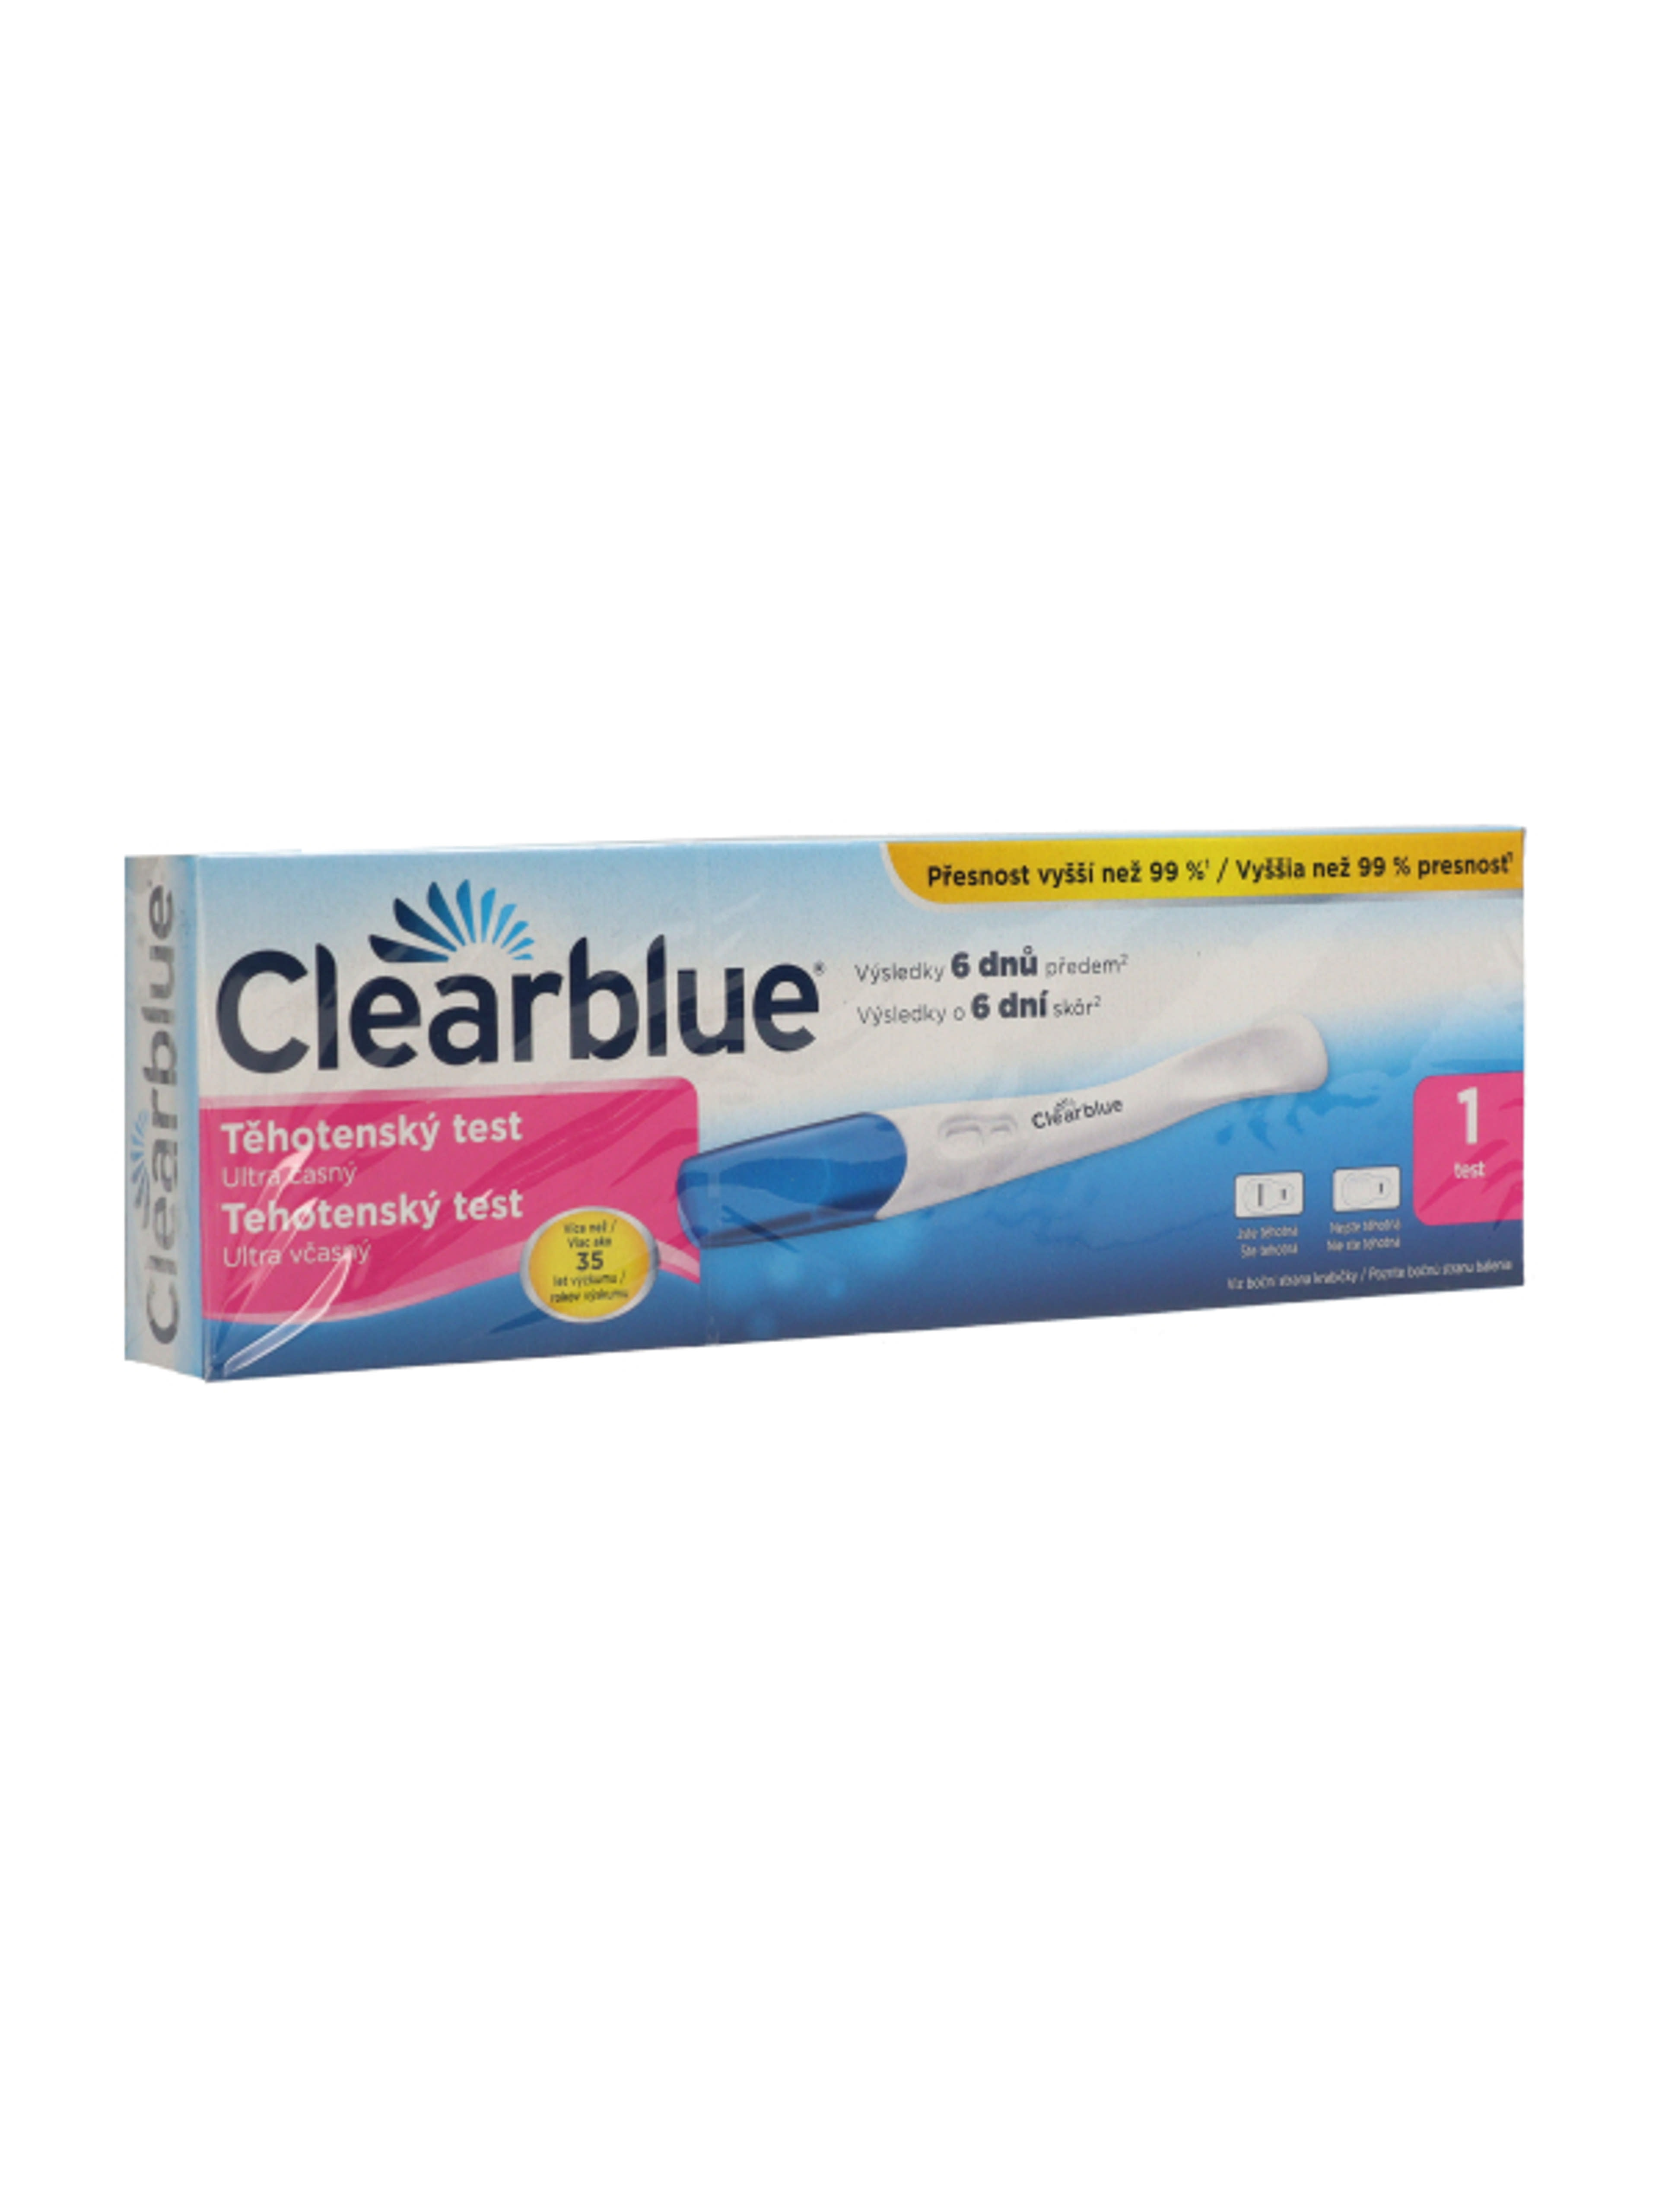 Clearblue rendkívül korai terhességi teszt - 1 db-5